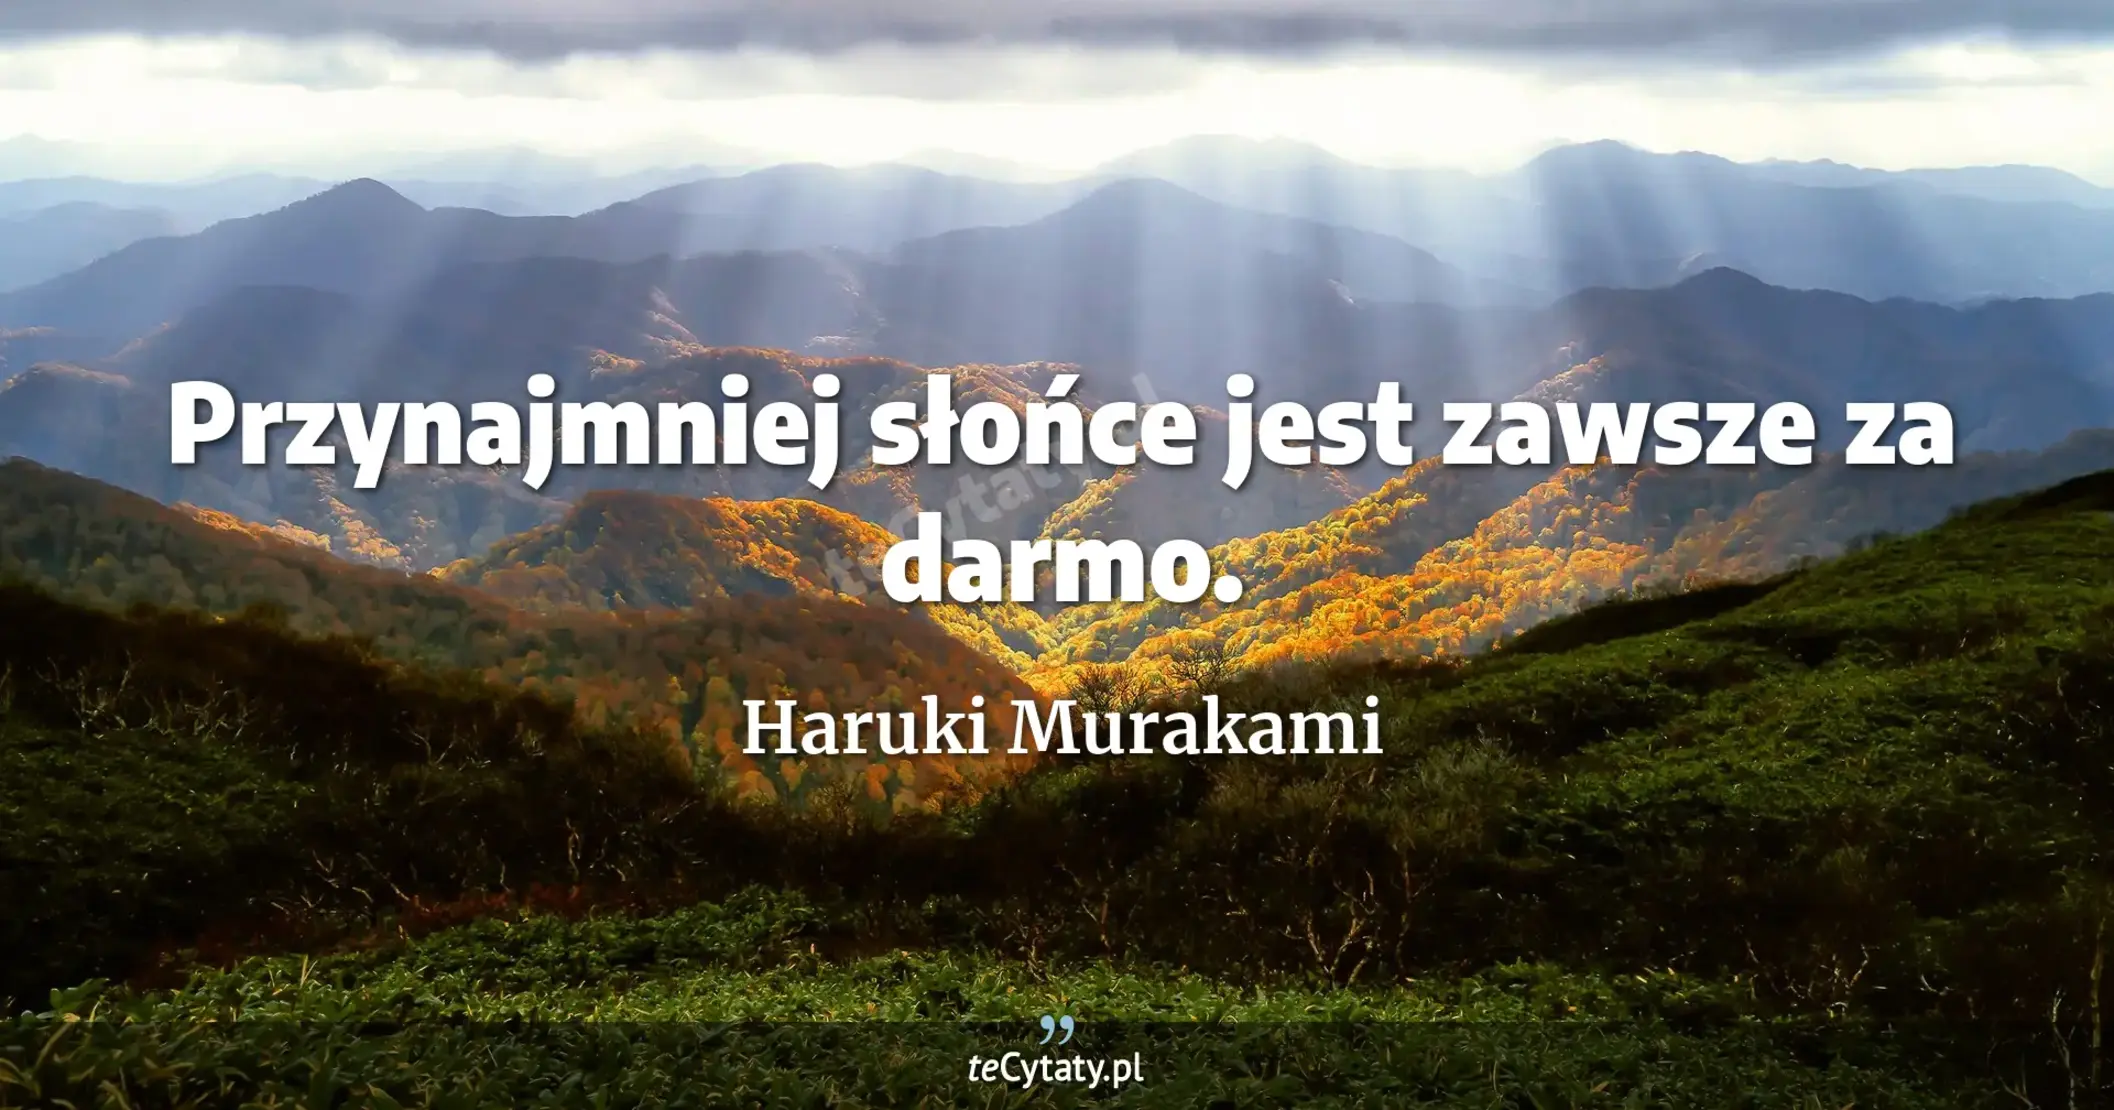 Przynajmniej słońce jest zawsze za darmo. - Haruki Murakami